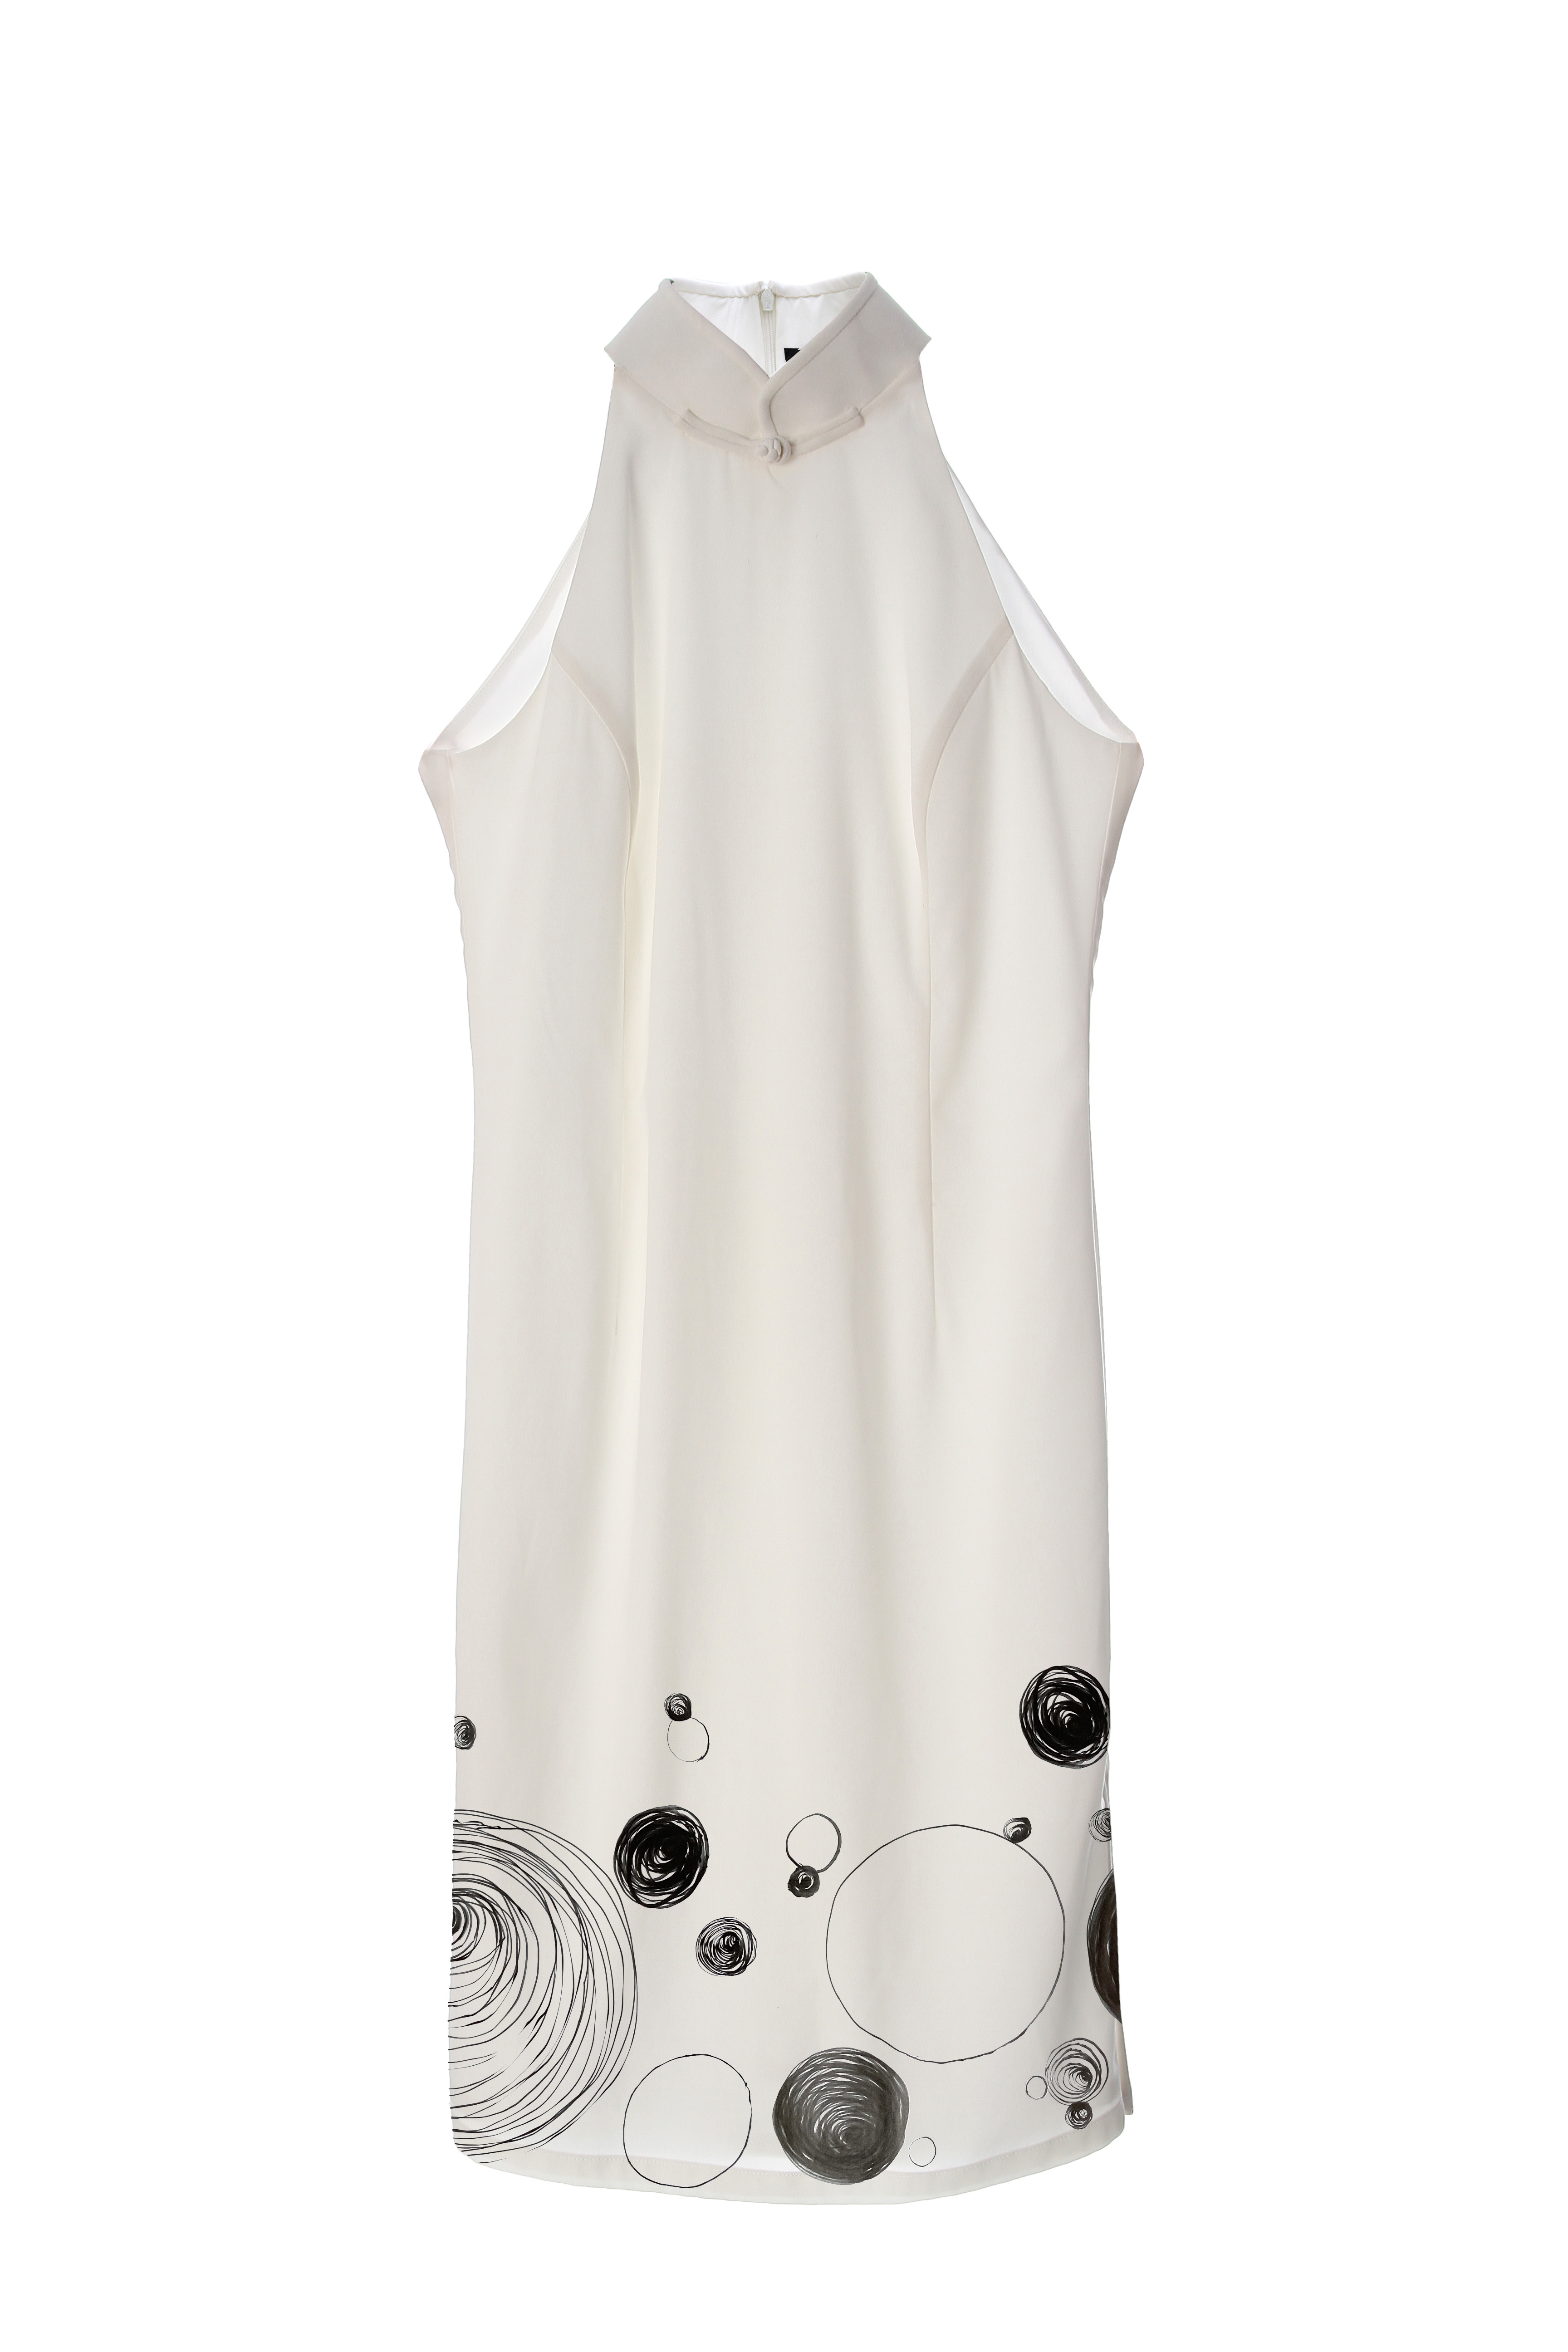 Shuhs 泡泡连衣裙 - 12 个再生水瓶 - 黑色和白色｜Shuhs Bubble Dress- 12 Recycled Water Bottles- Black & White